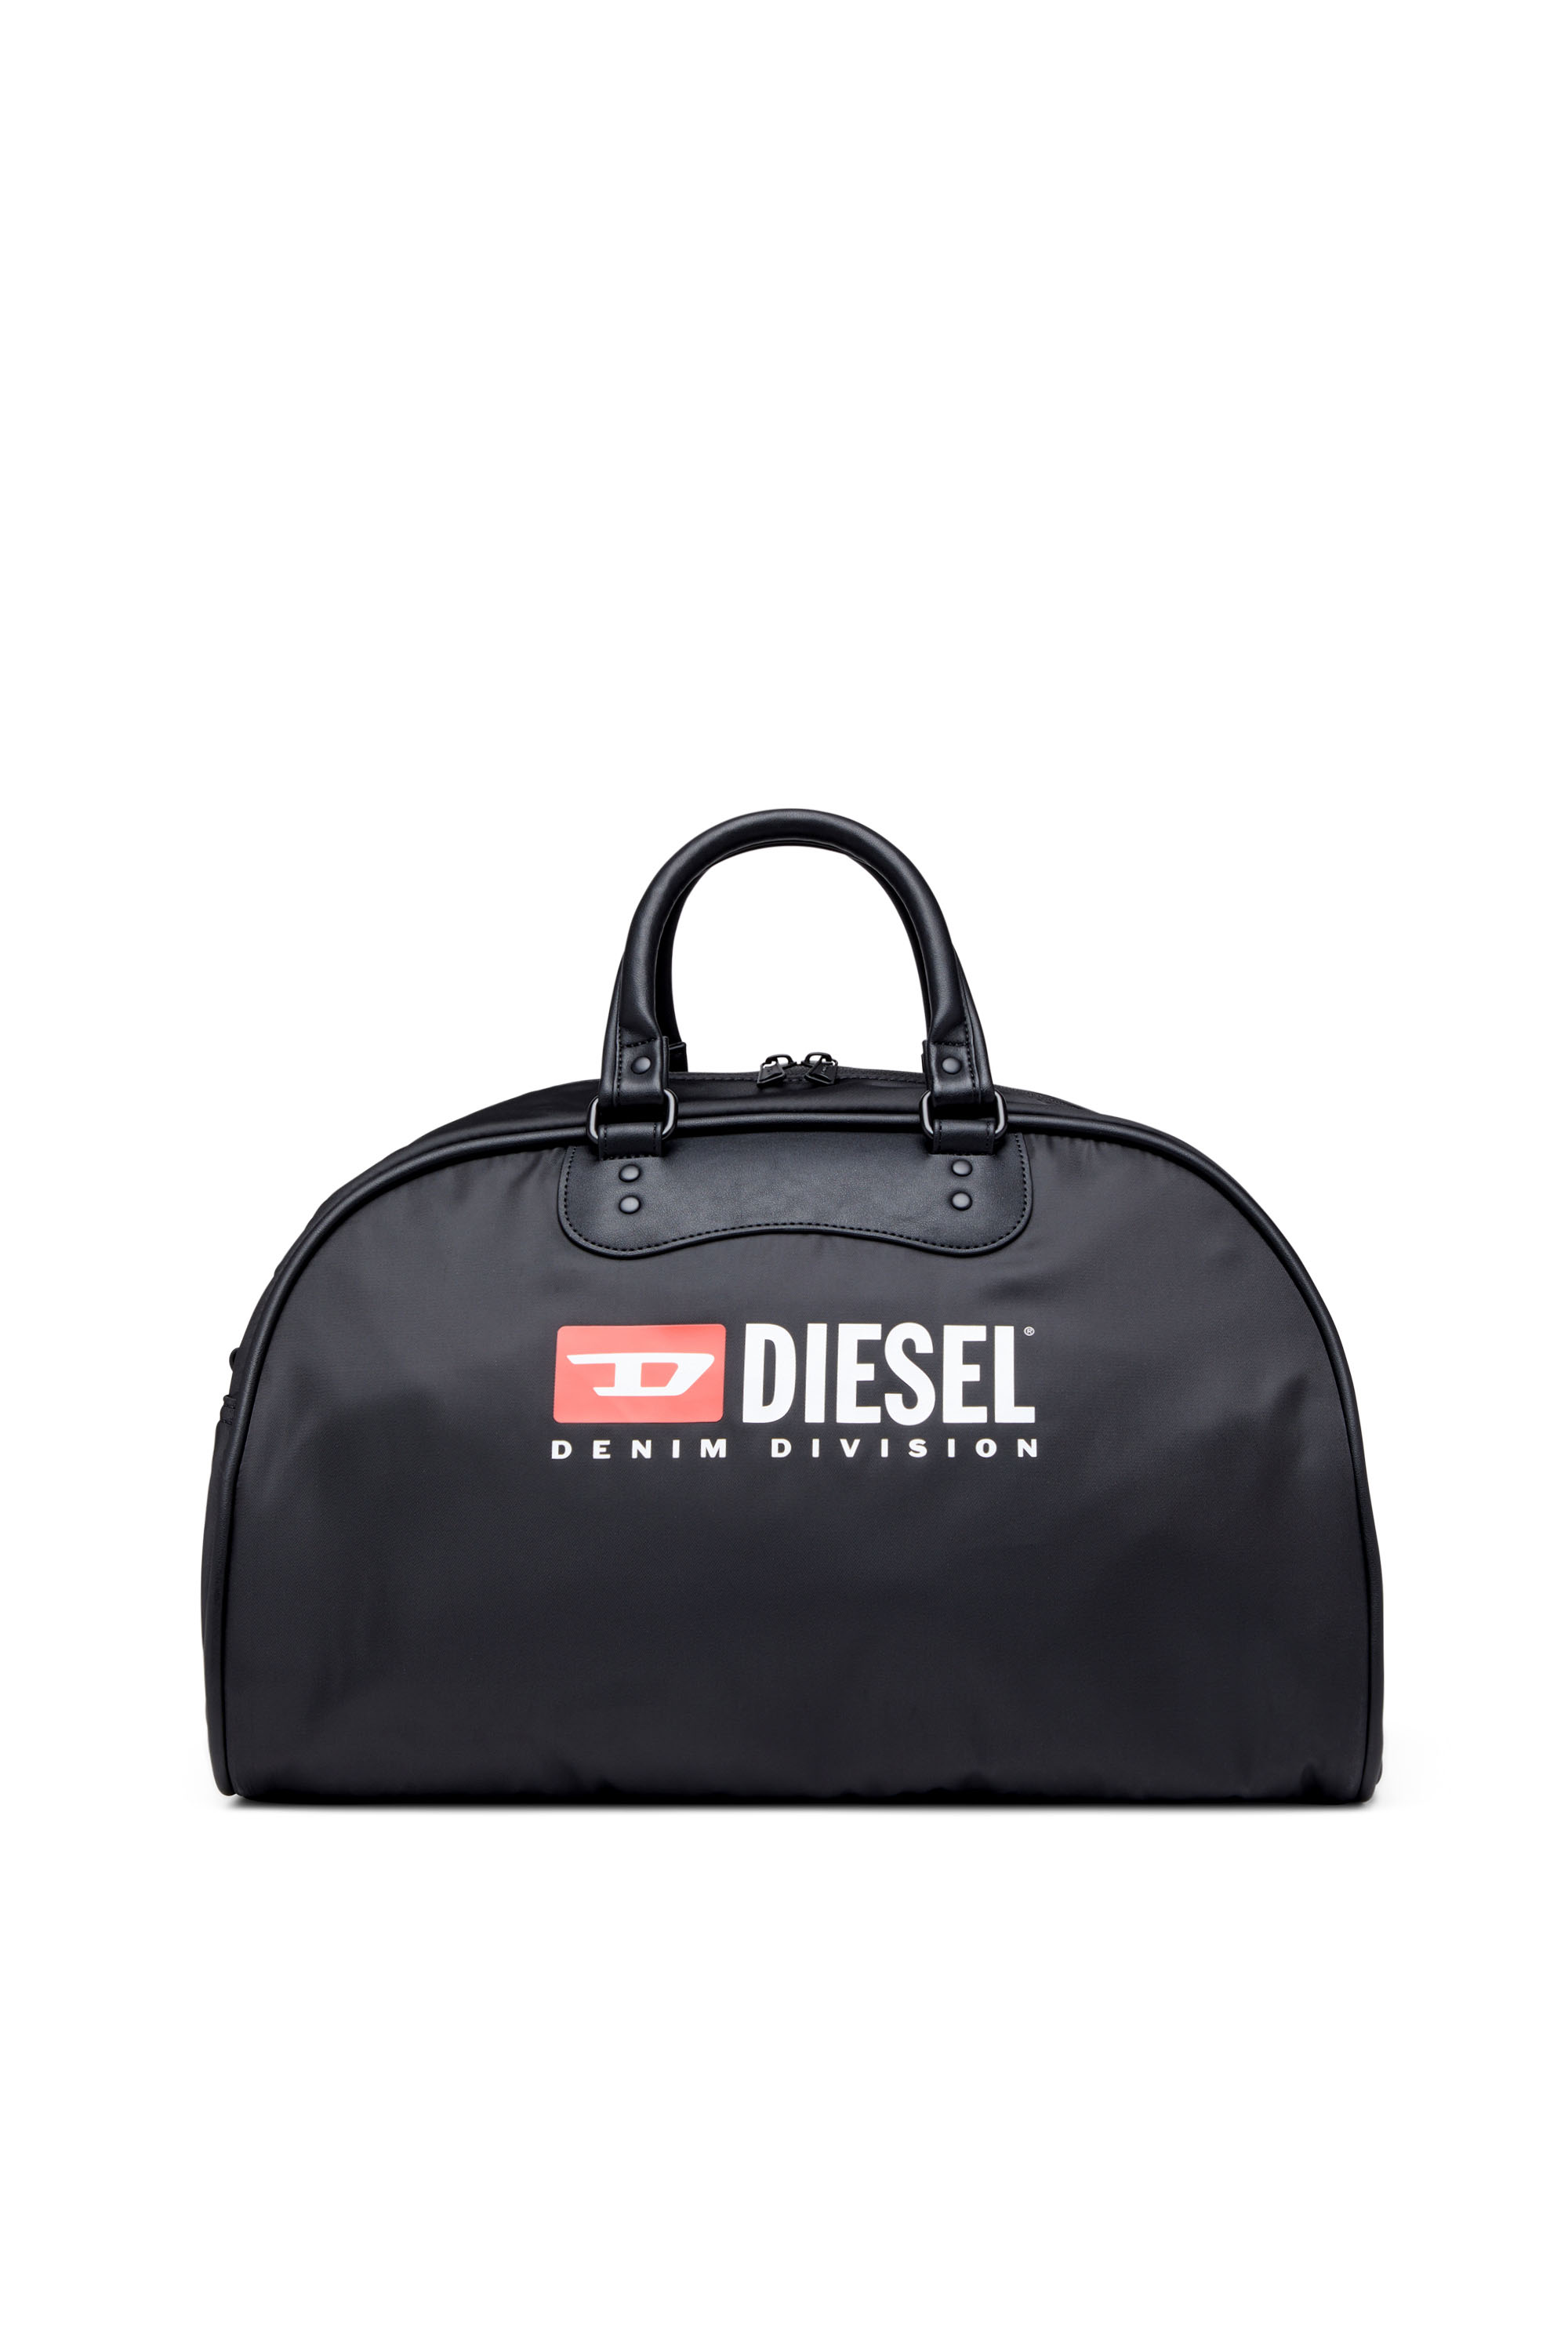 Diesel - RINKE DUFFLE, Schwarz - Image 1